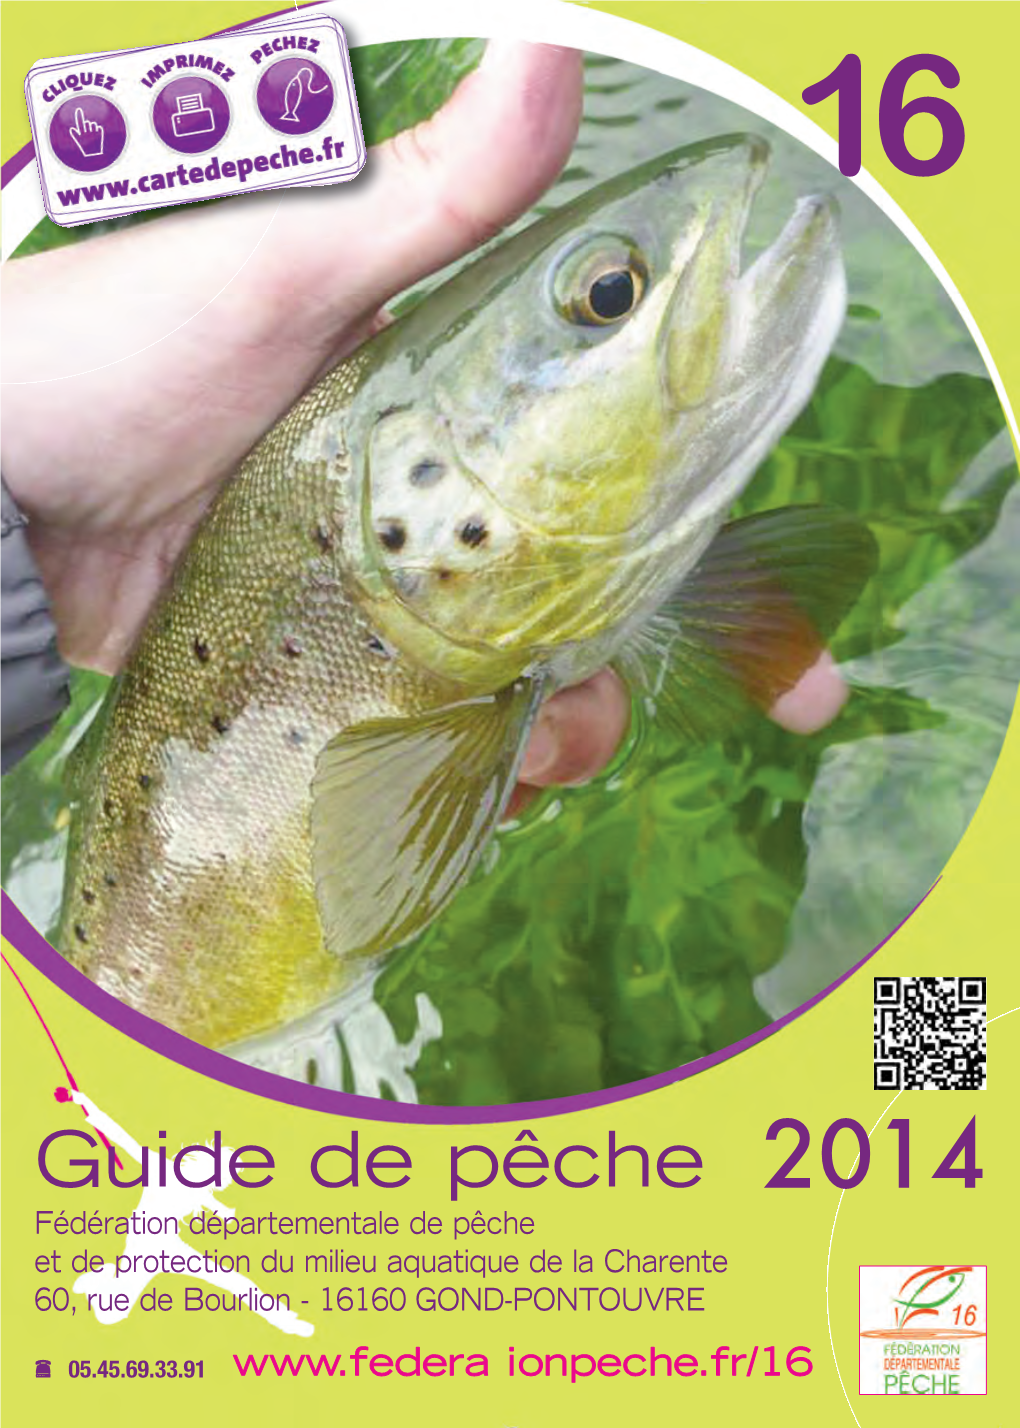 Guide De Pêche Fédération Départementale De Pêche 2014 Et De Protection Du Milieu Aquatique De La Charente 60, Rue De Bourlion - 16160 GOND-PONTOUVRE